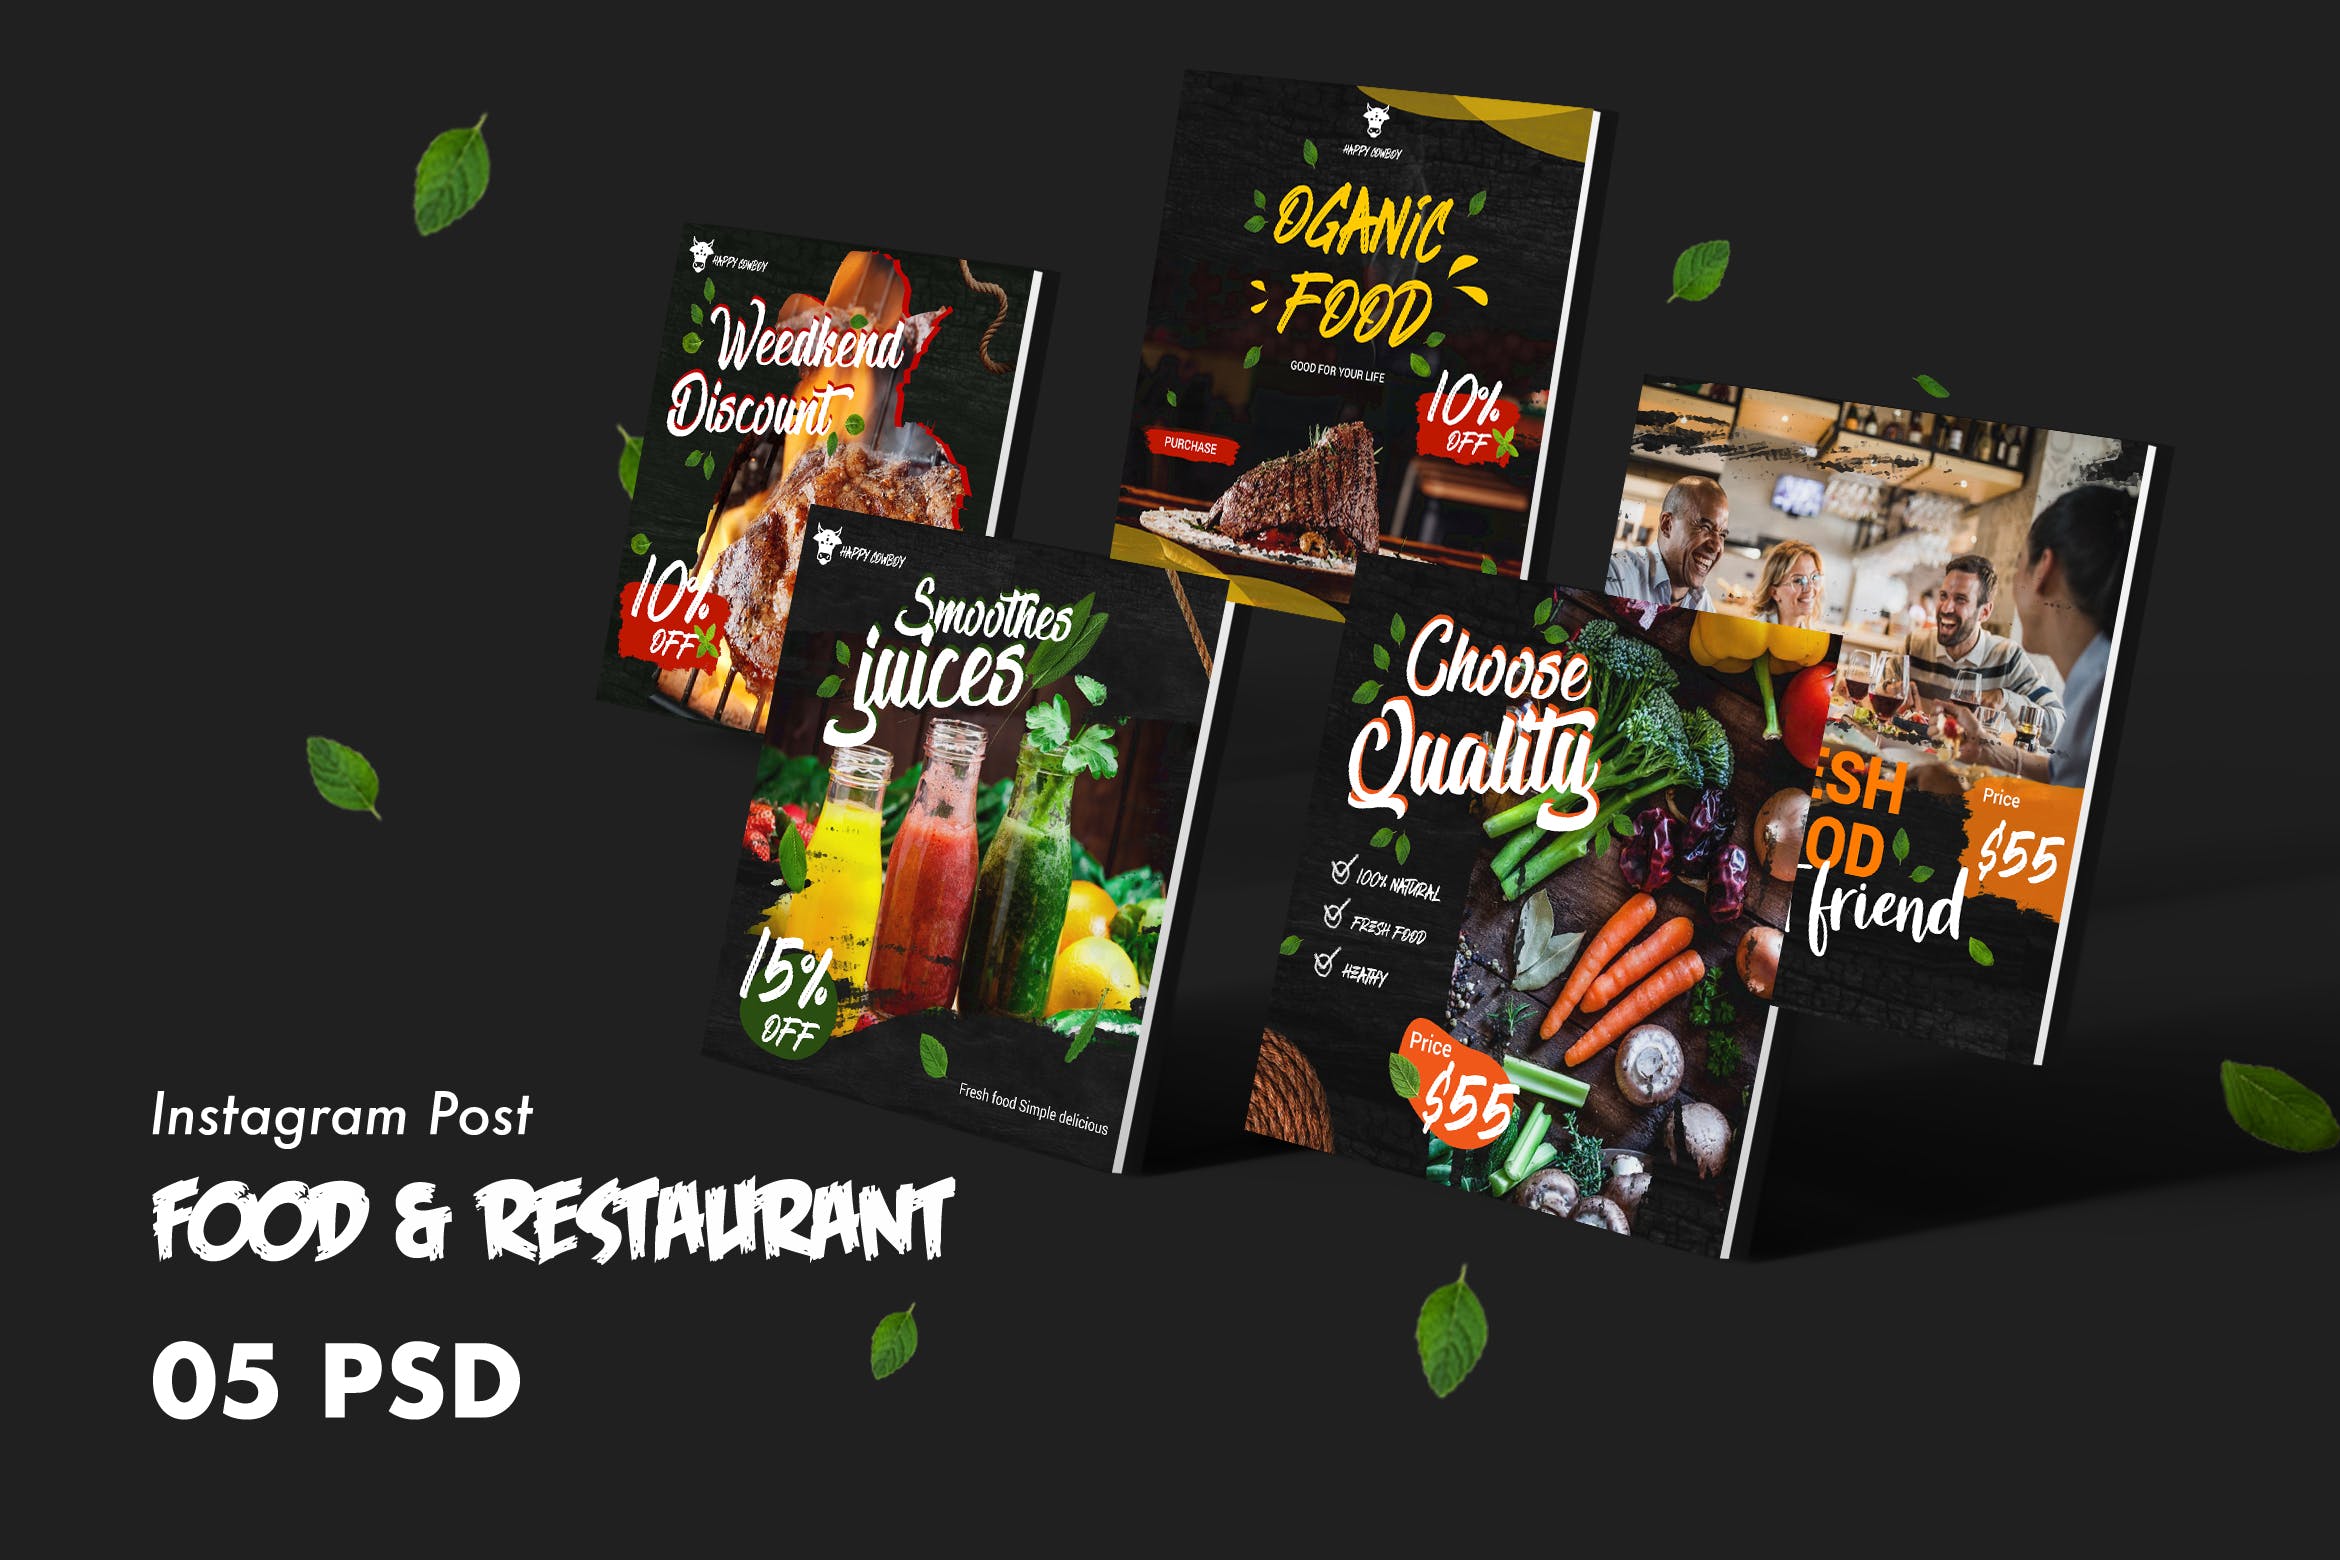 西式美食＆餐厅Facebook社交平台广告设计PSD模板第一素材精选 Food & Restaurants Facebook Post PSD Template插图